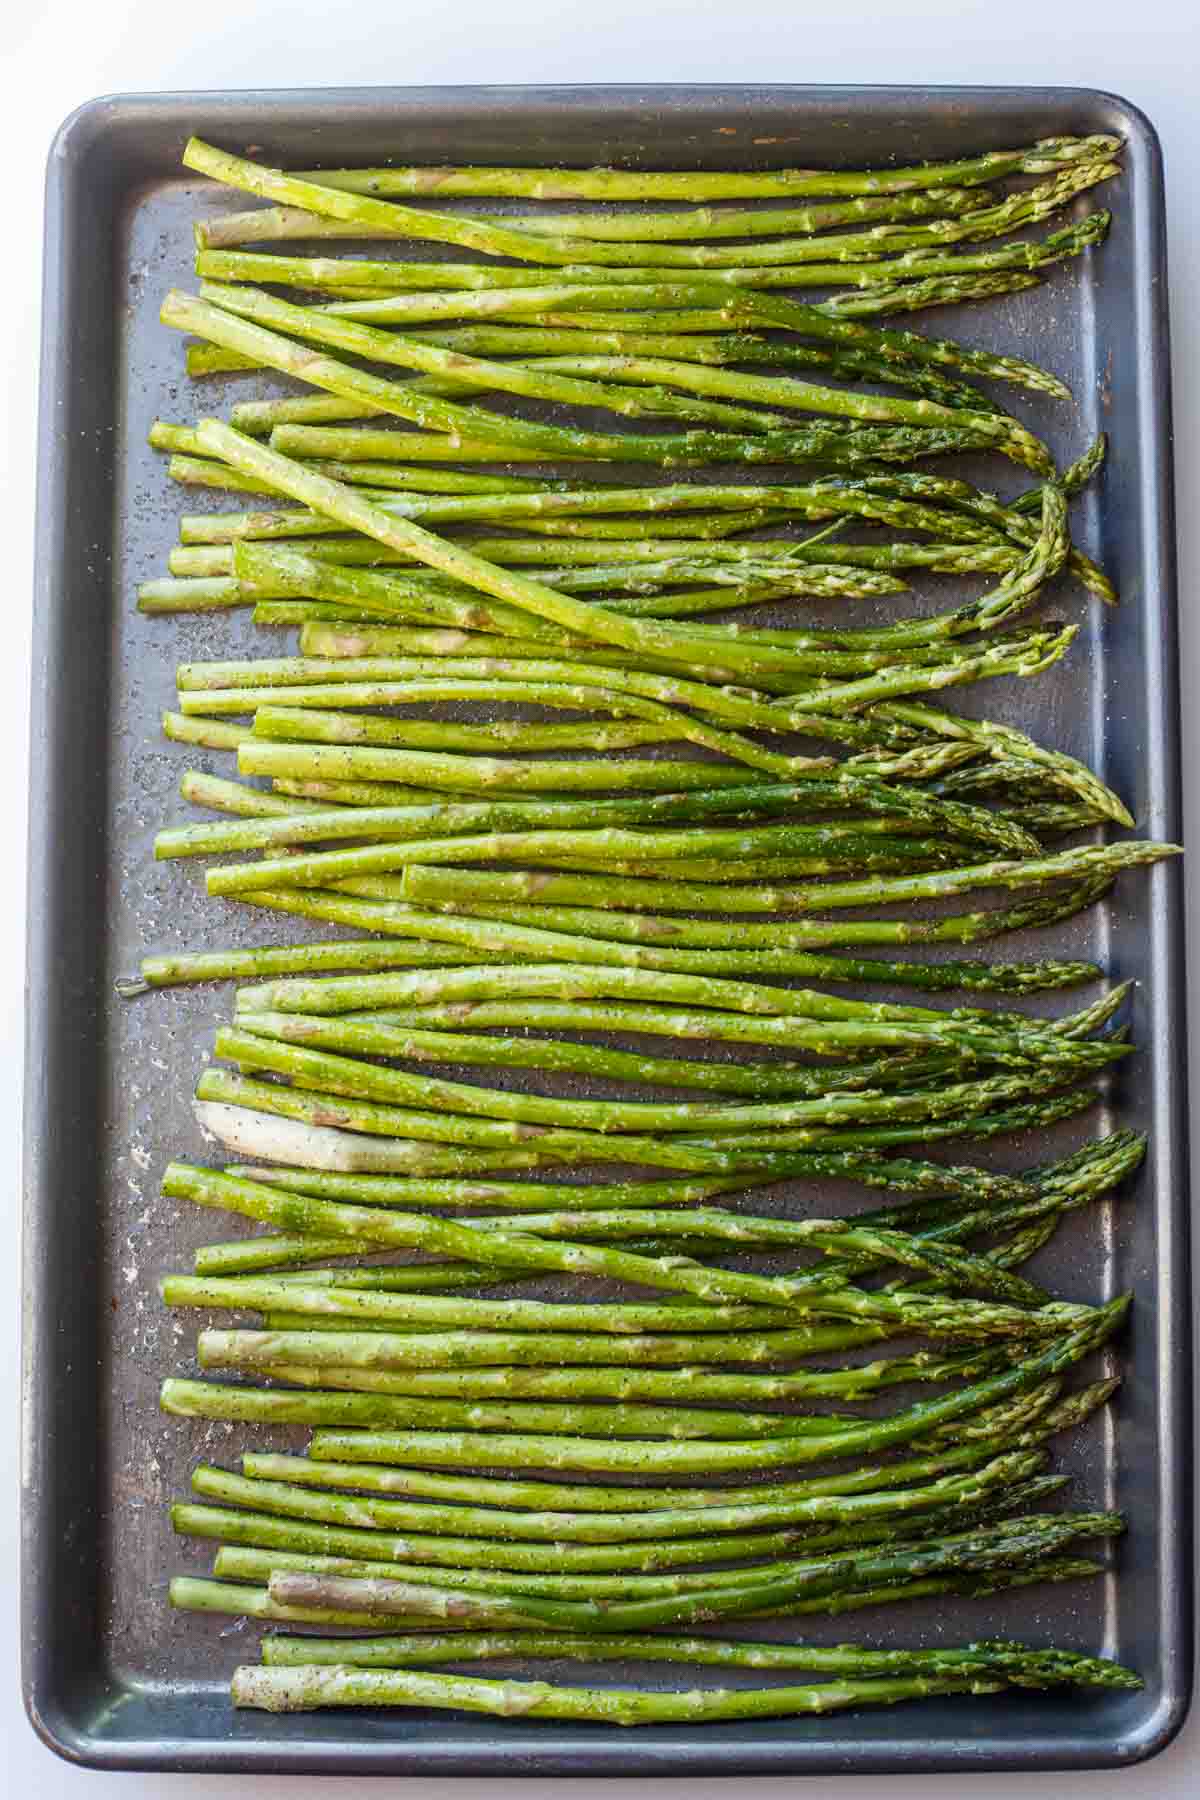 Asparagus in a baking sheet.